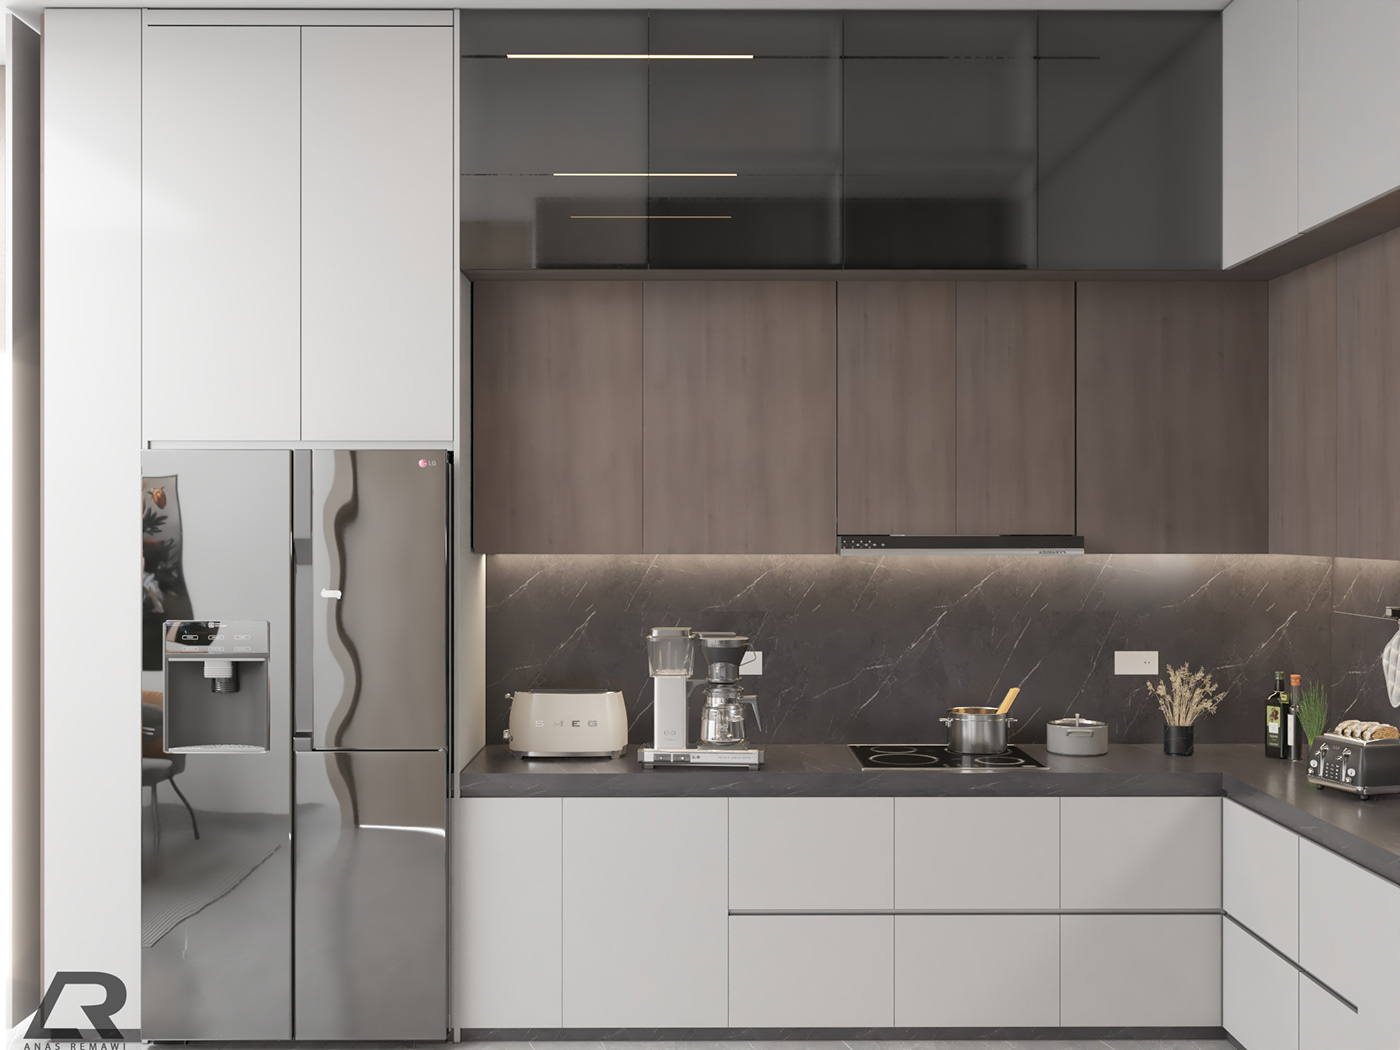 design kitchen visualization modern 3ds max interior design  architecture Render wooden 3D